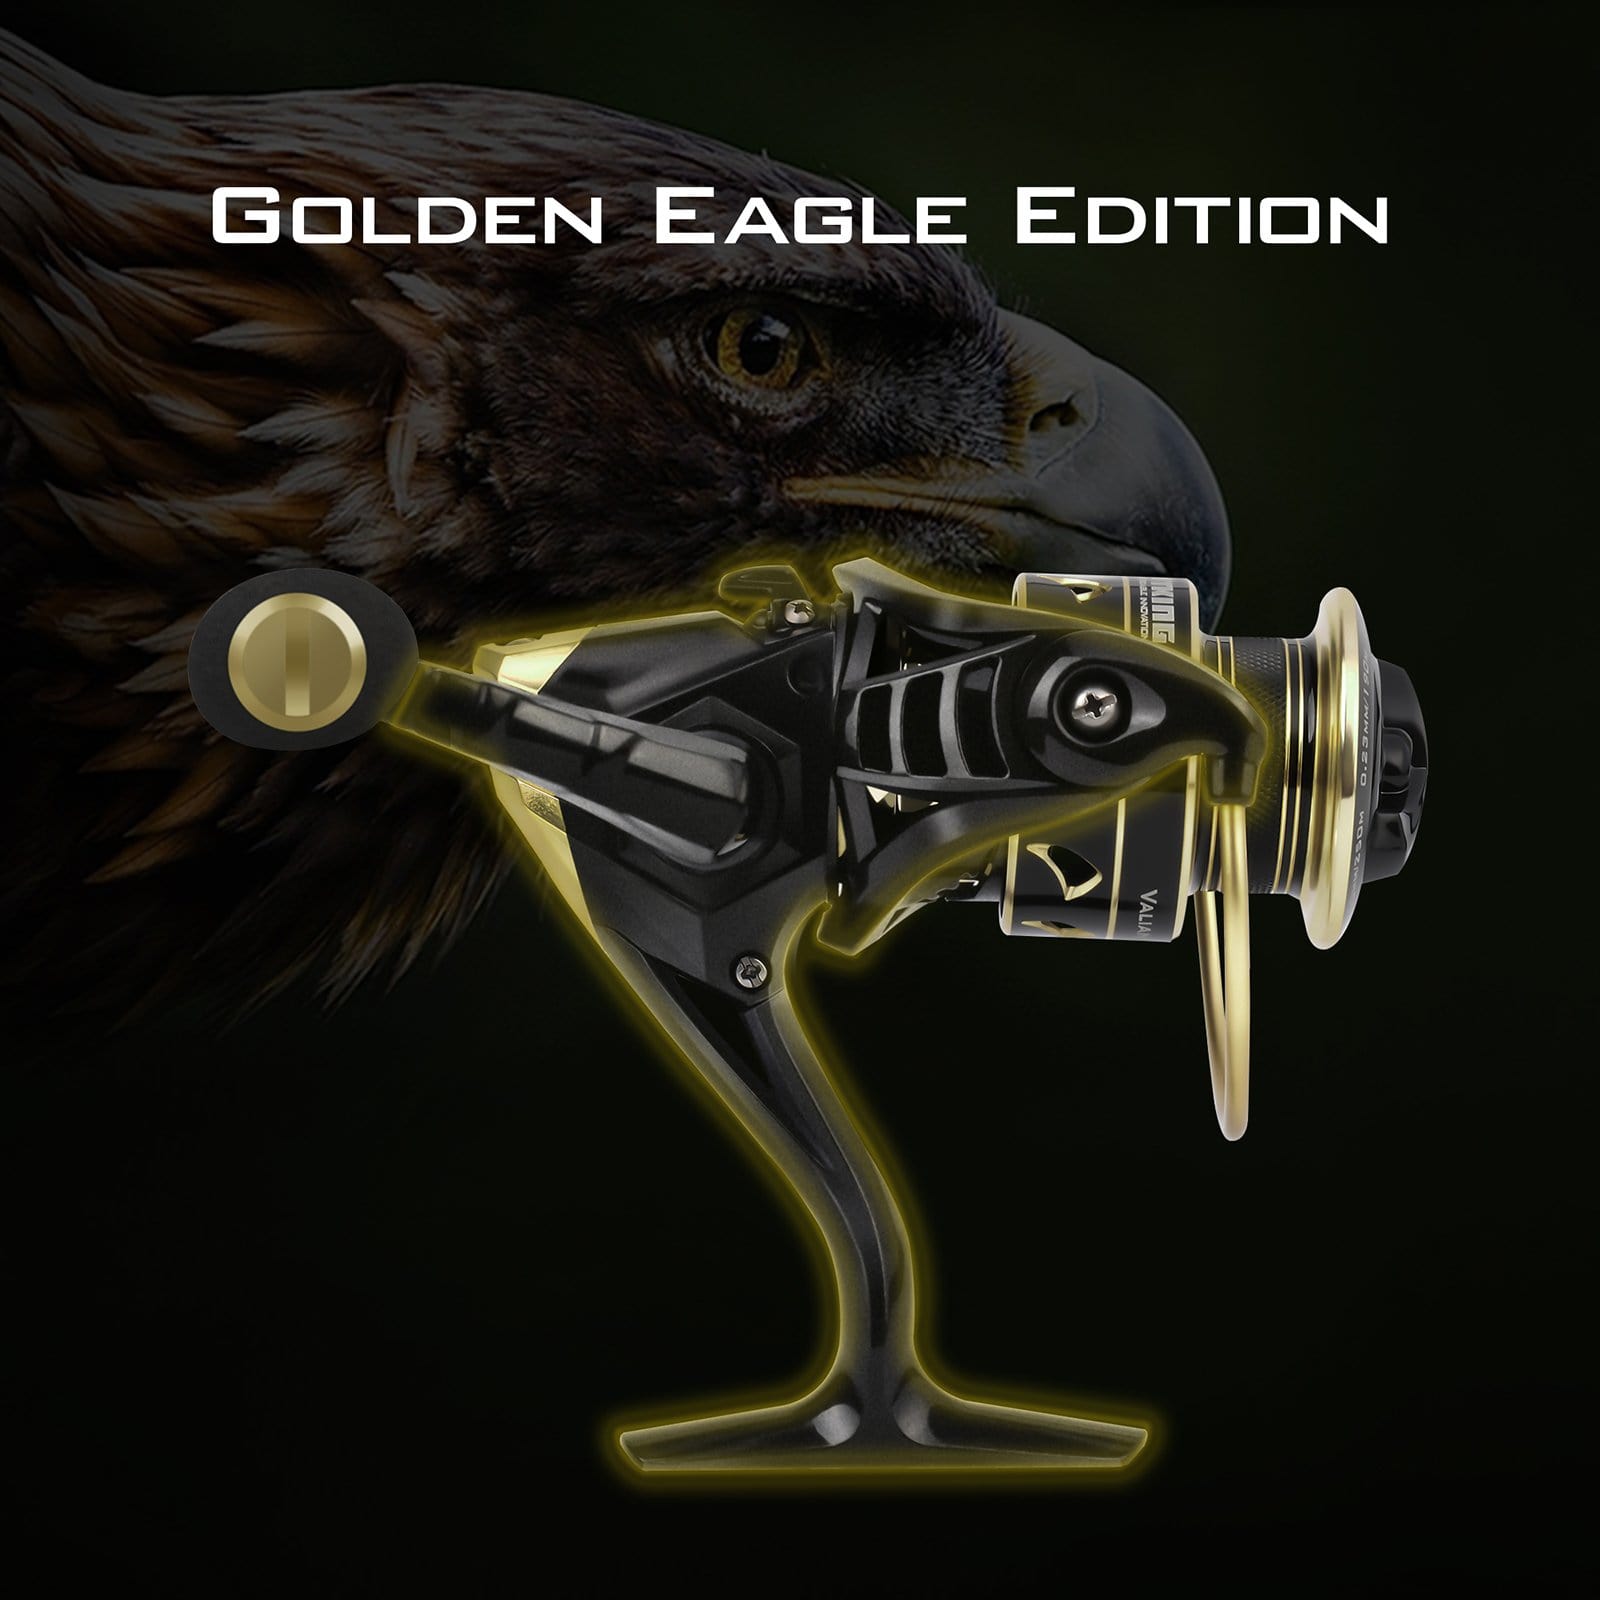 KastKing Valiant Eagle Spinning Reels, Black Gold Fishing Reel, Size 3000